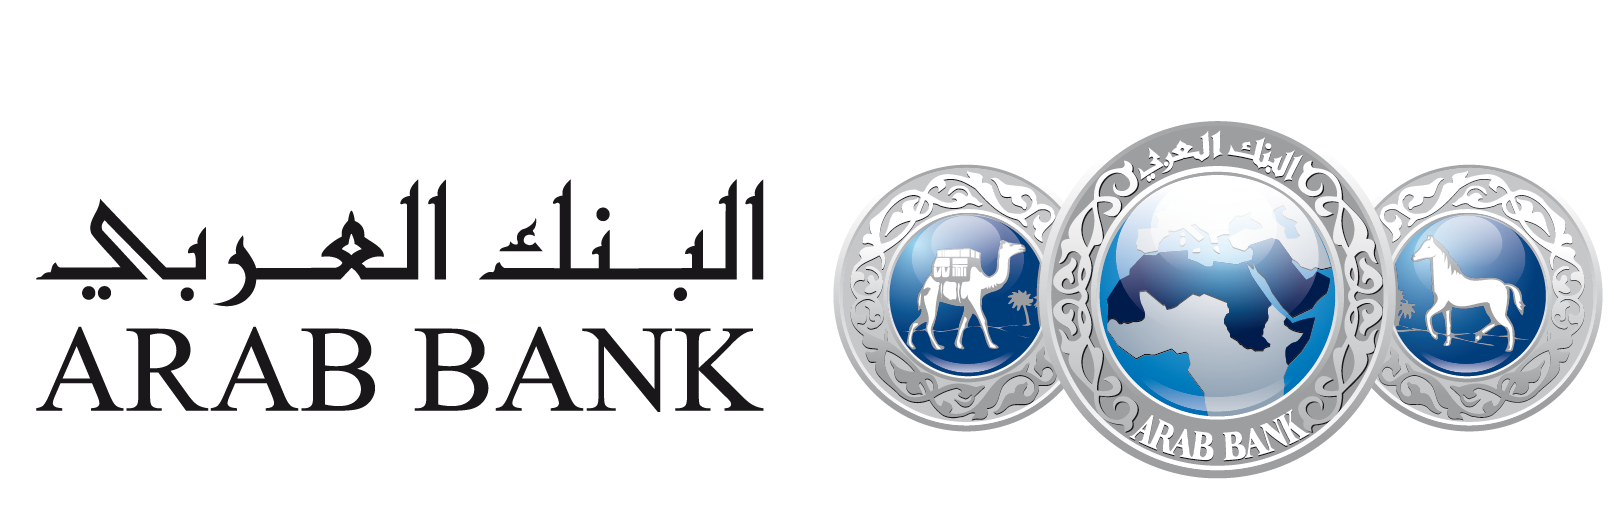 https://www.arabbank.com.jo/